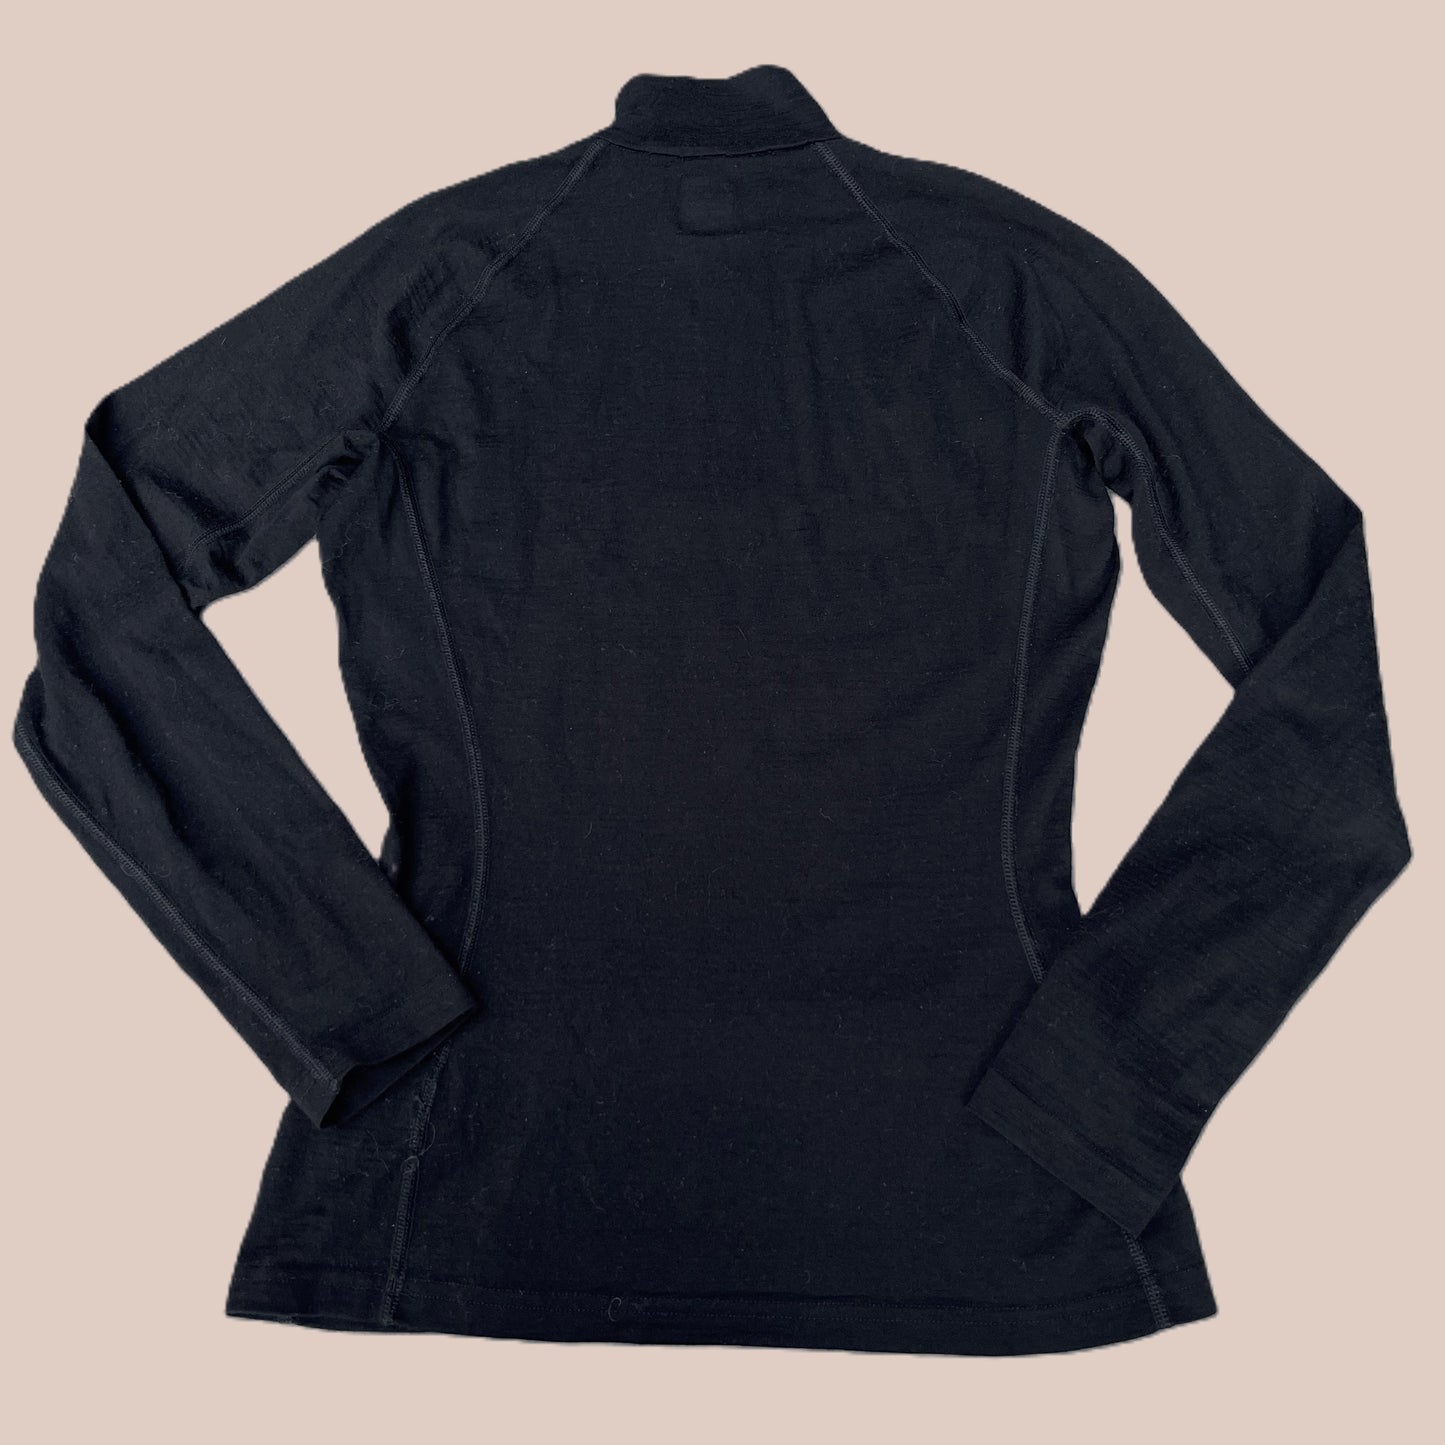 Thermo-Langarmshirt von Icebreaker 200 Damen in S, M, L Funktionsunterwäsche schwarz